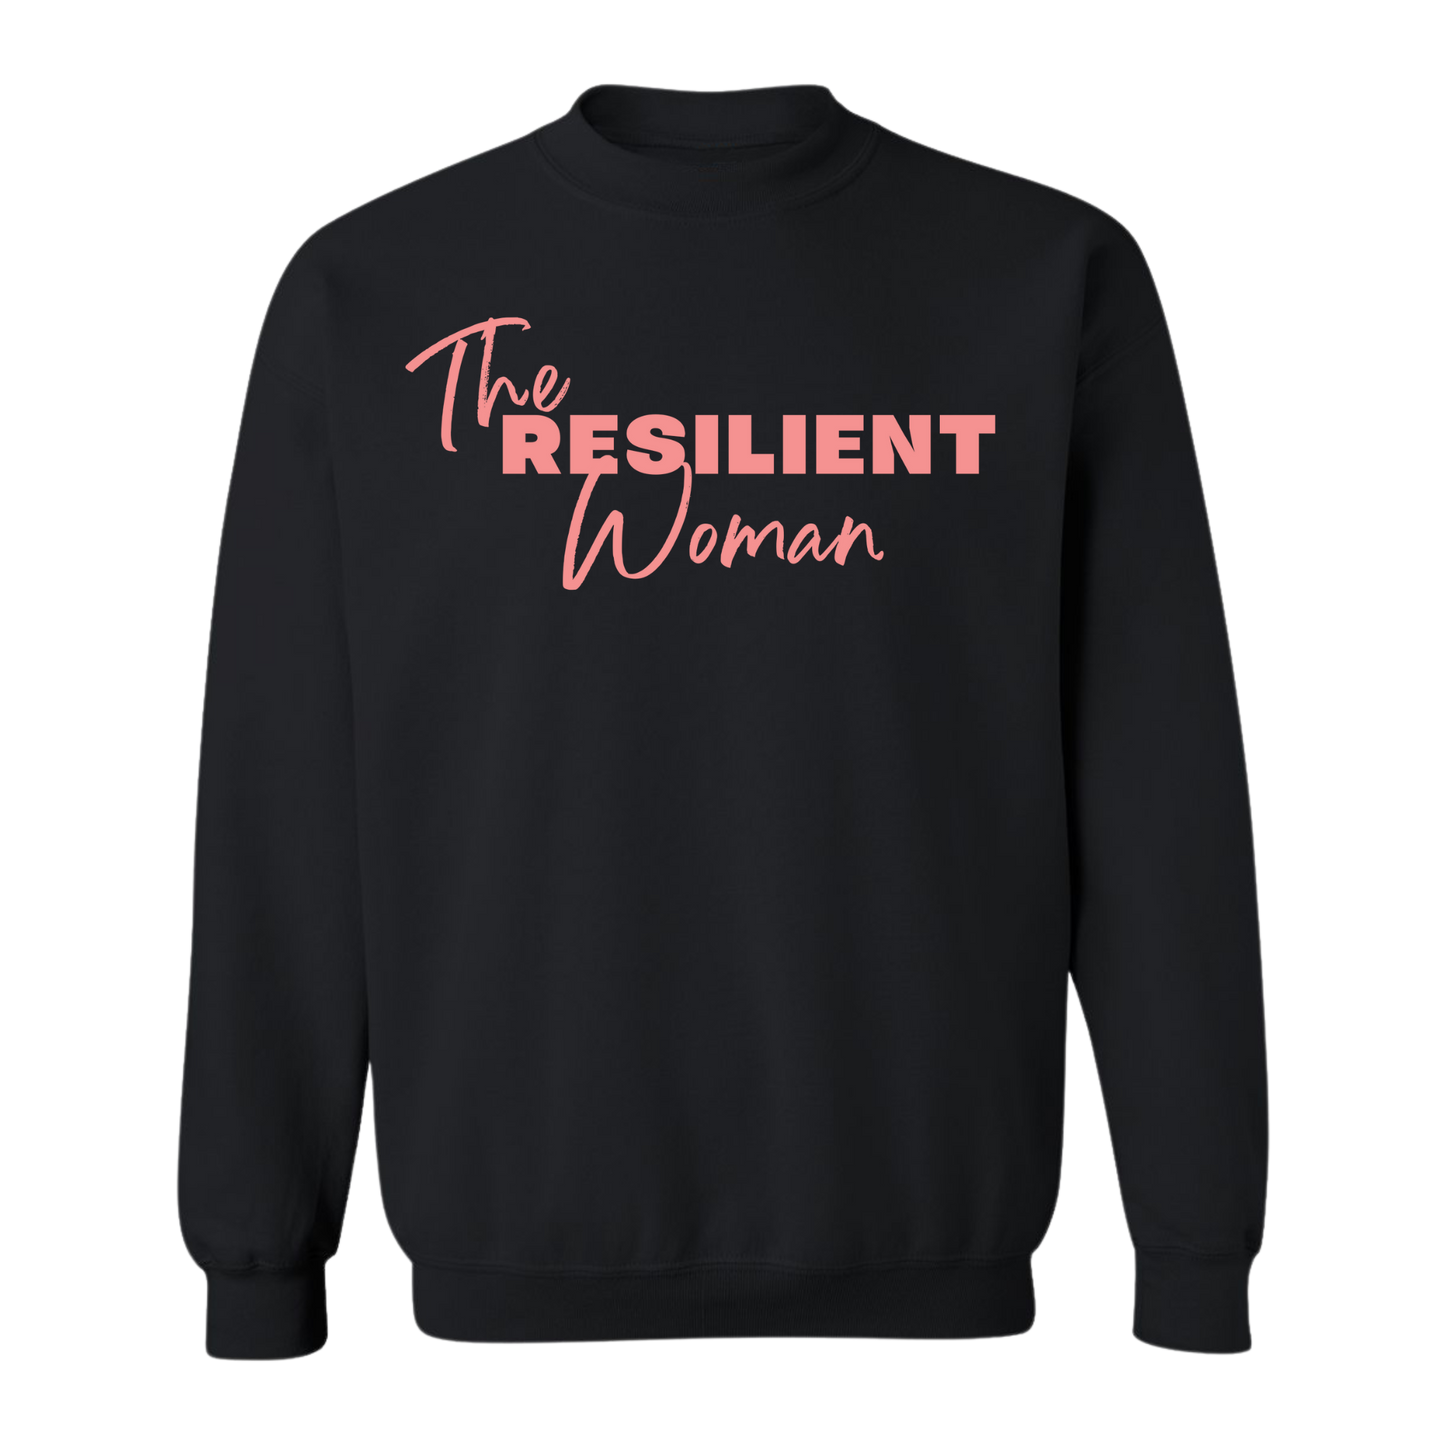 Resilient Woman Sweatshirt